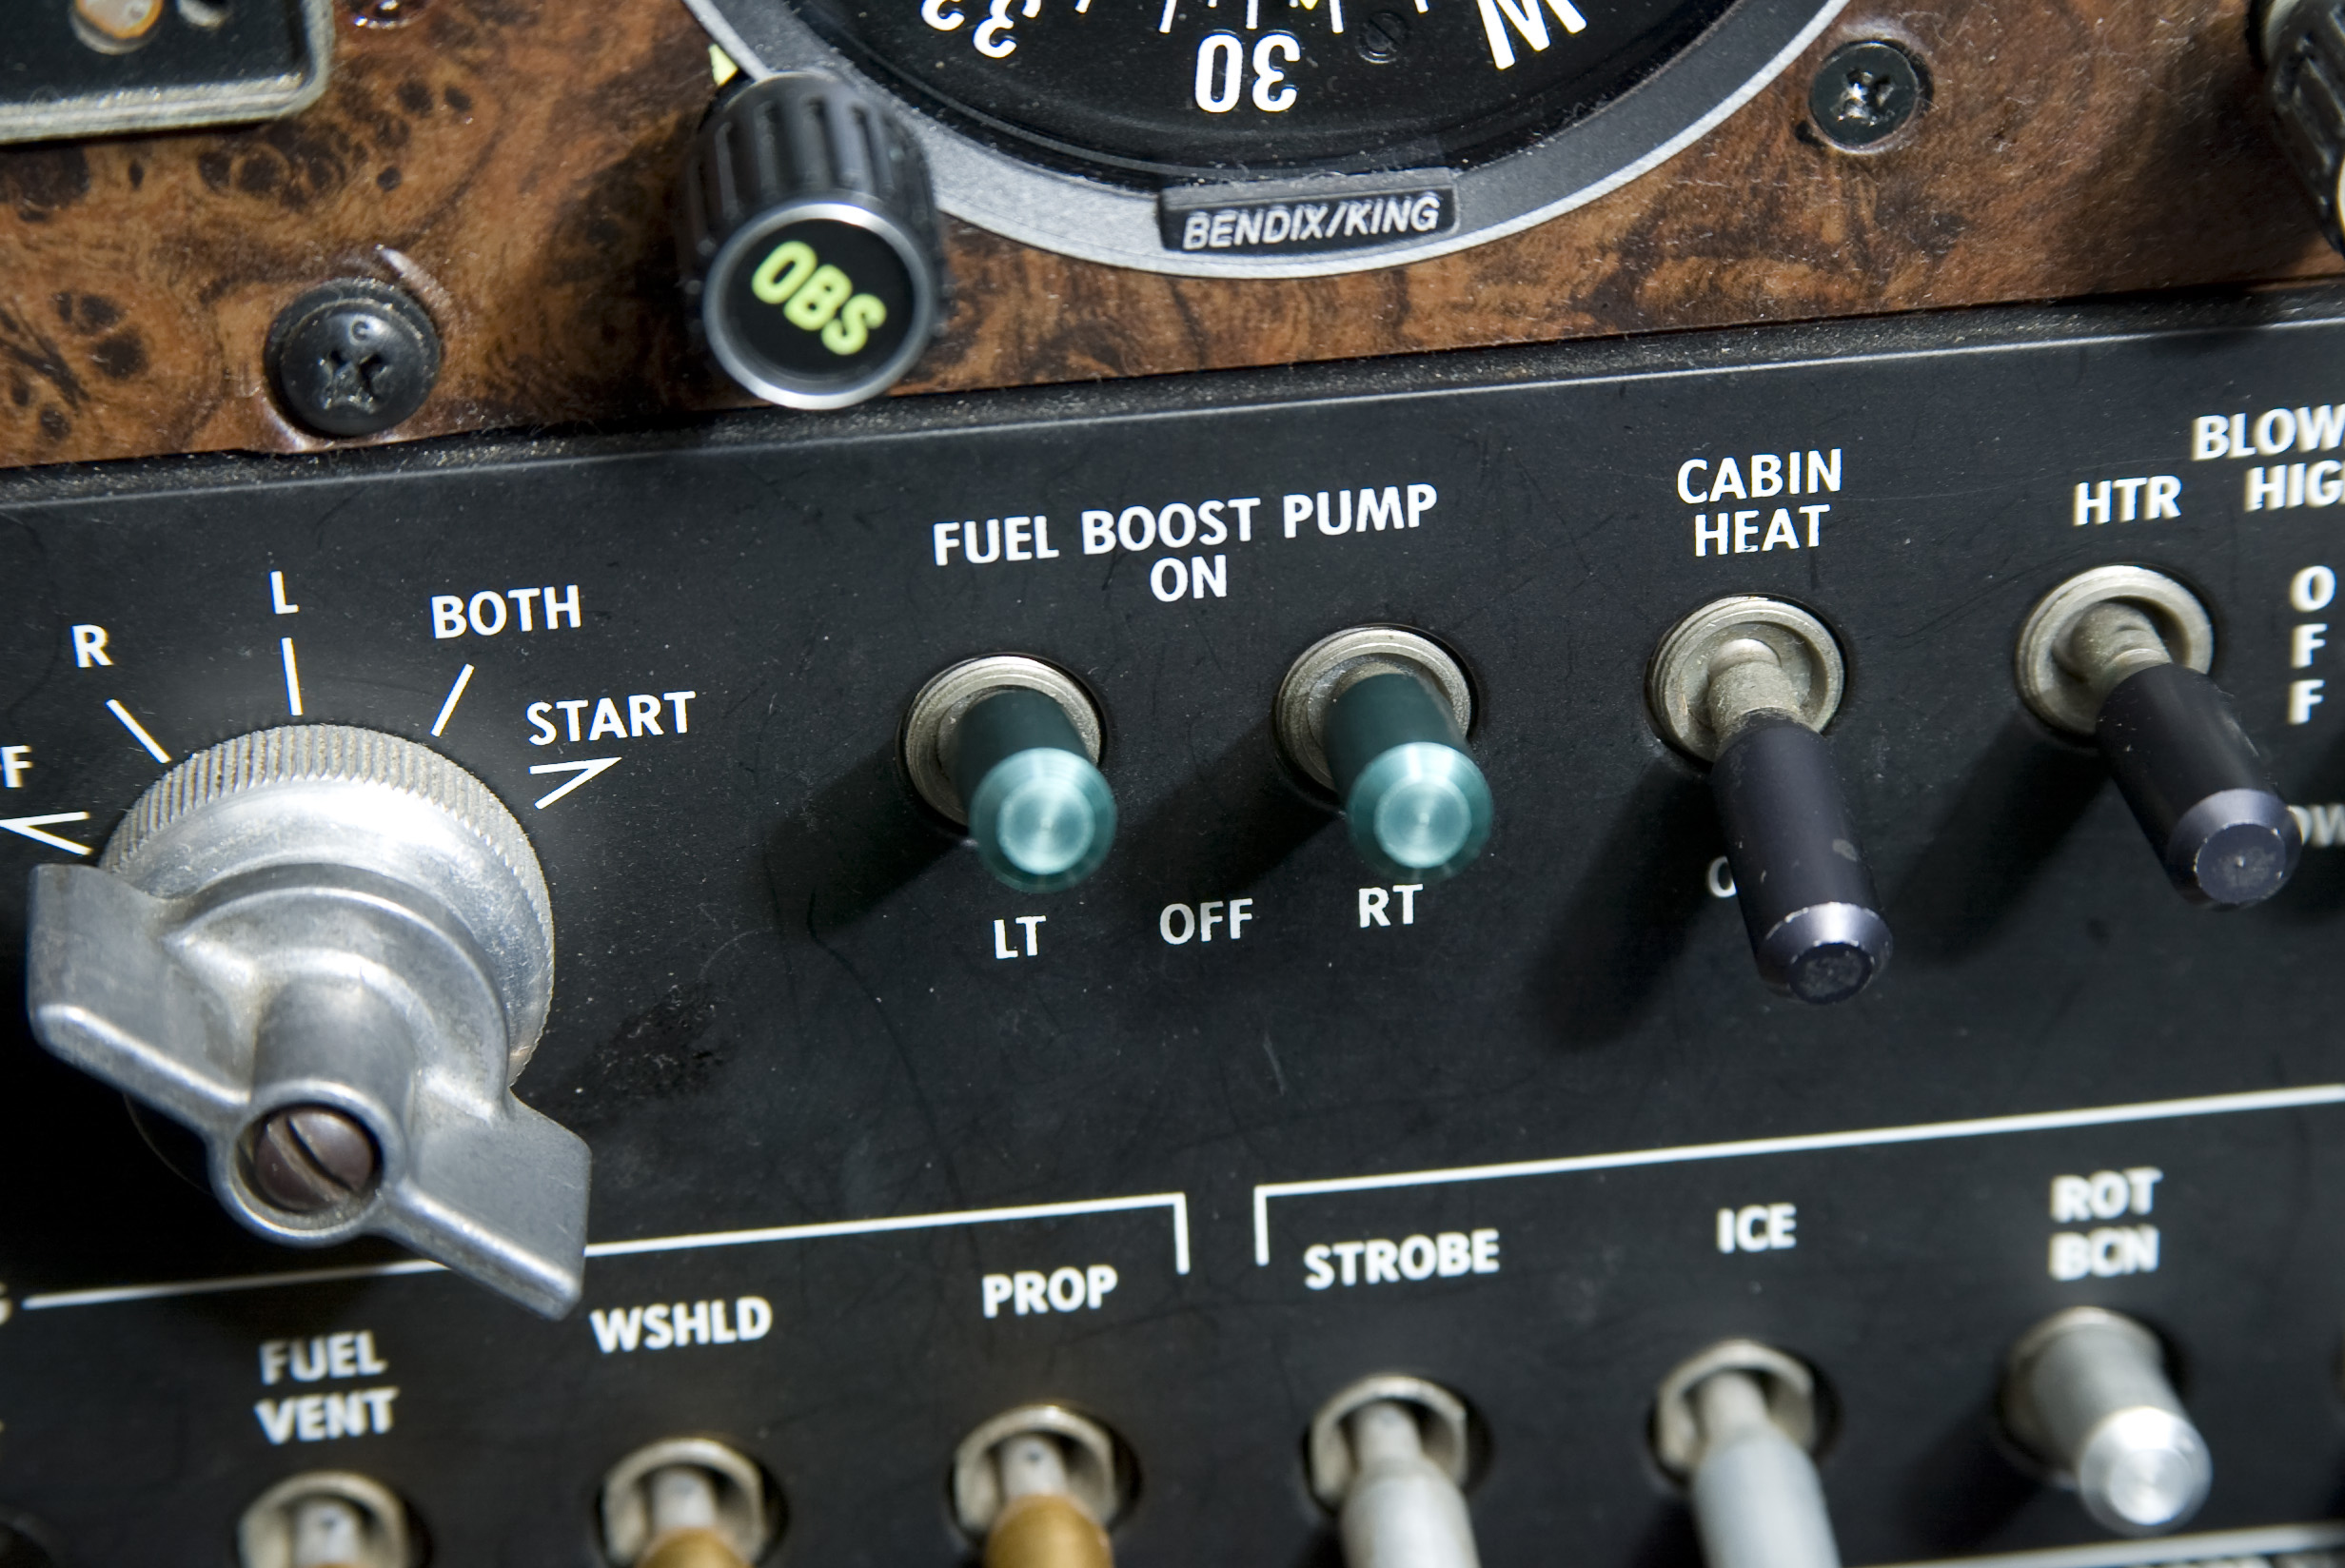 Fuel boost pump switches.
Wichita, KS   USA
Image#: 04-350_048.TIF   Camera: Canon EOS-1D 
